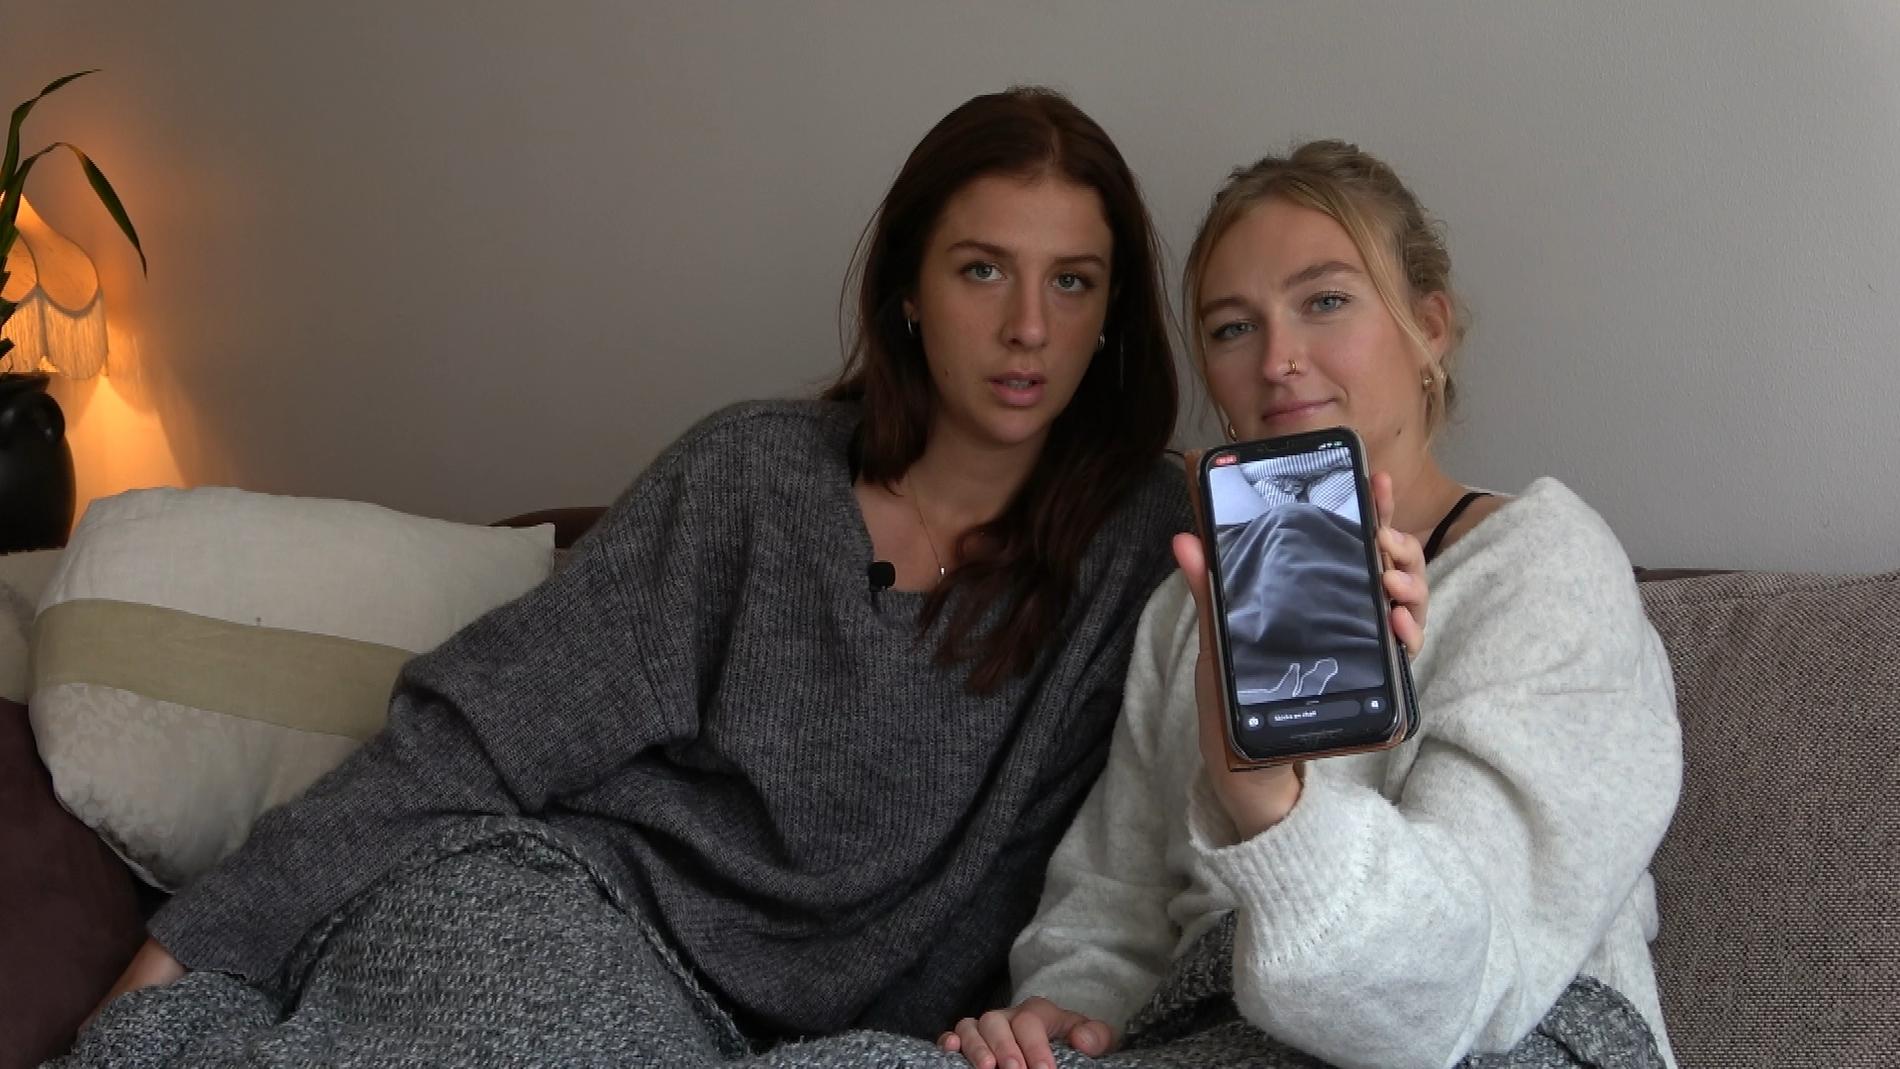 Pressbild för SVT:s nya serie ”Köp mina trosor”. Journalisten Nellie Erberth (till höger) lägger upp kontaktannonser och blir överöst av snoppbilder.